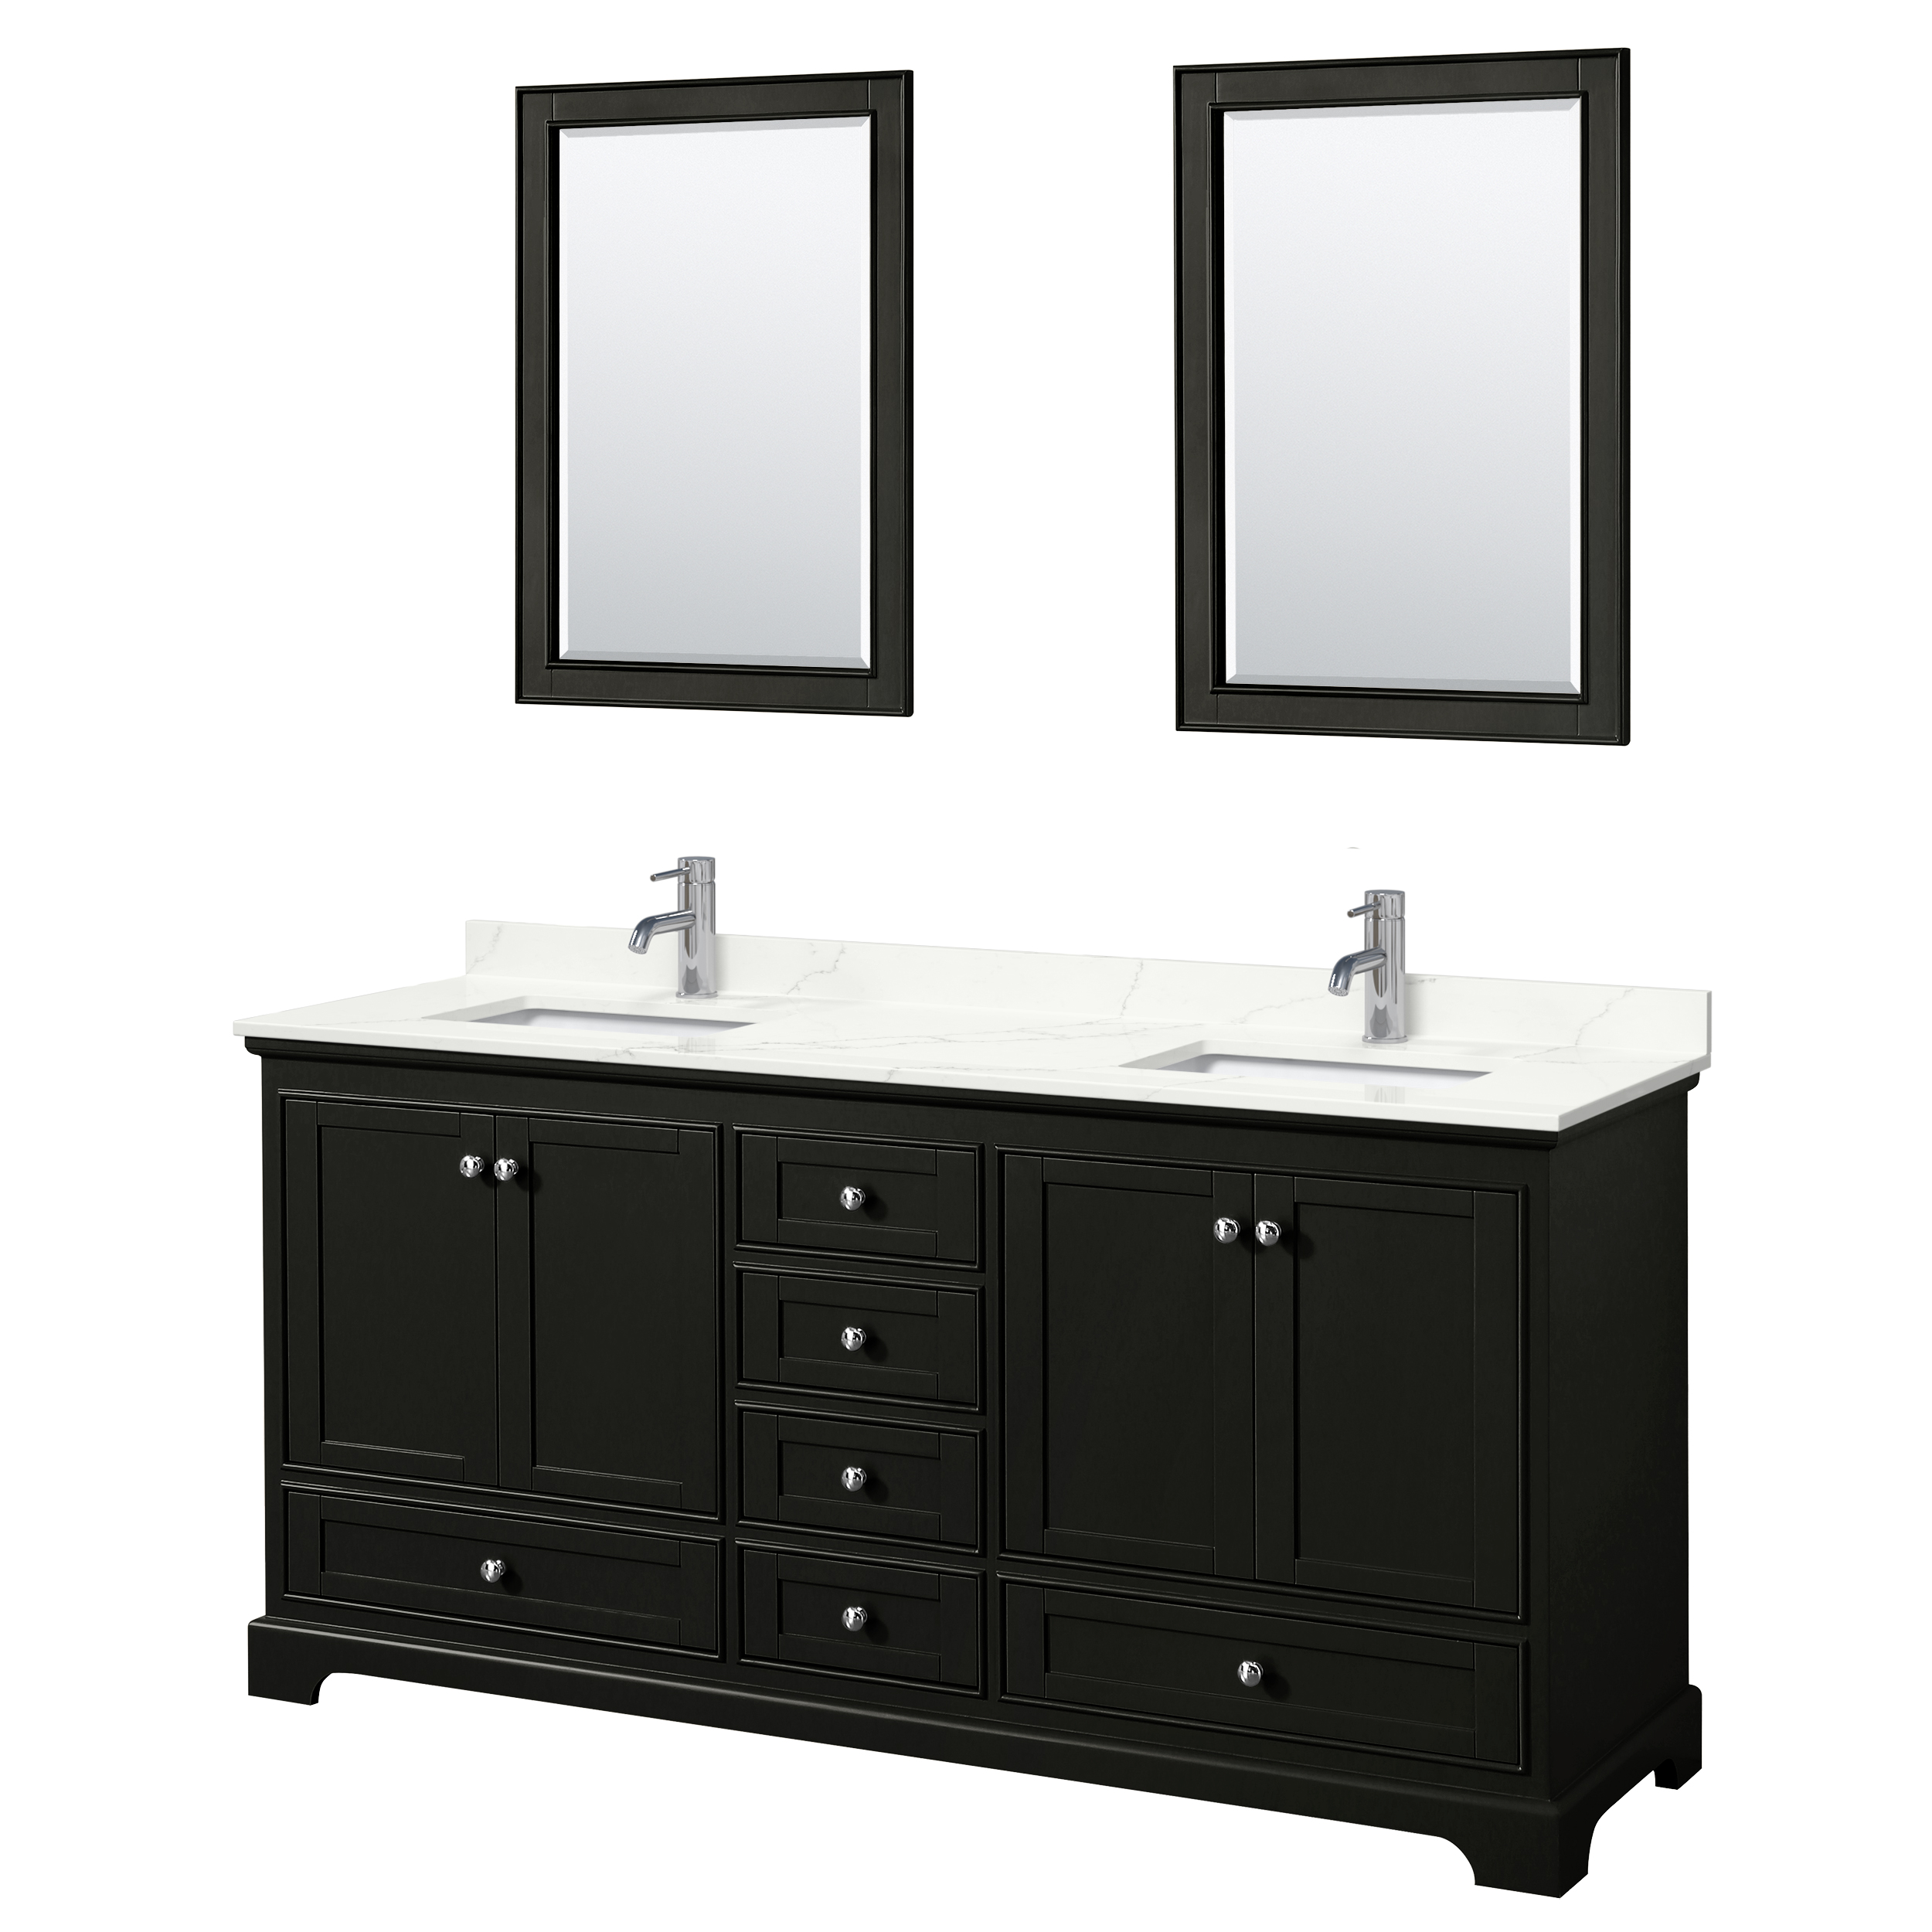 Deborah 72" Double Bathroom Vanity in Dark Espresso WC-2020-72-DBL-VAN-DES_